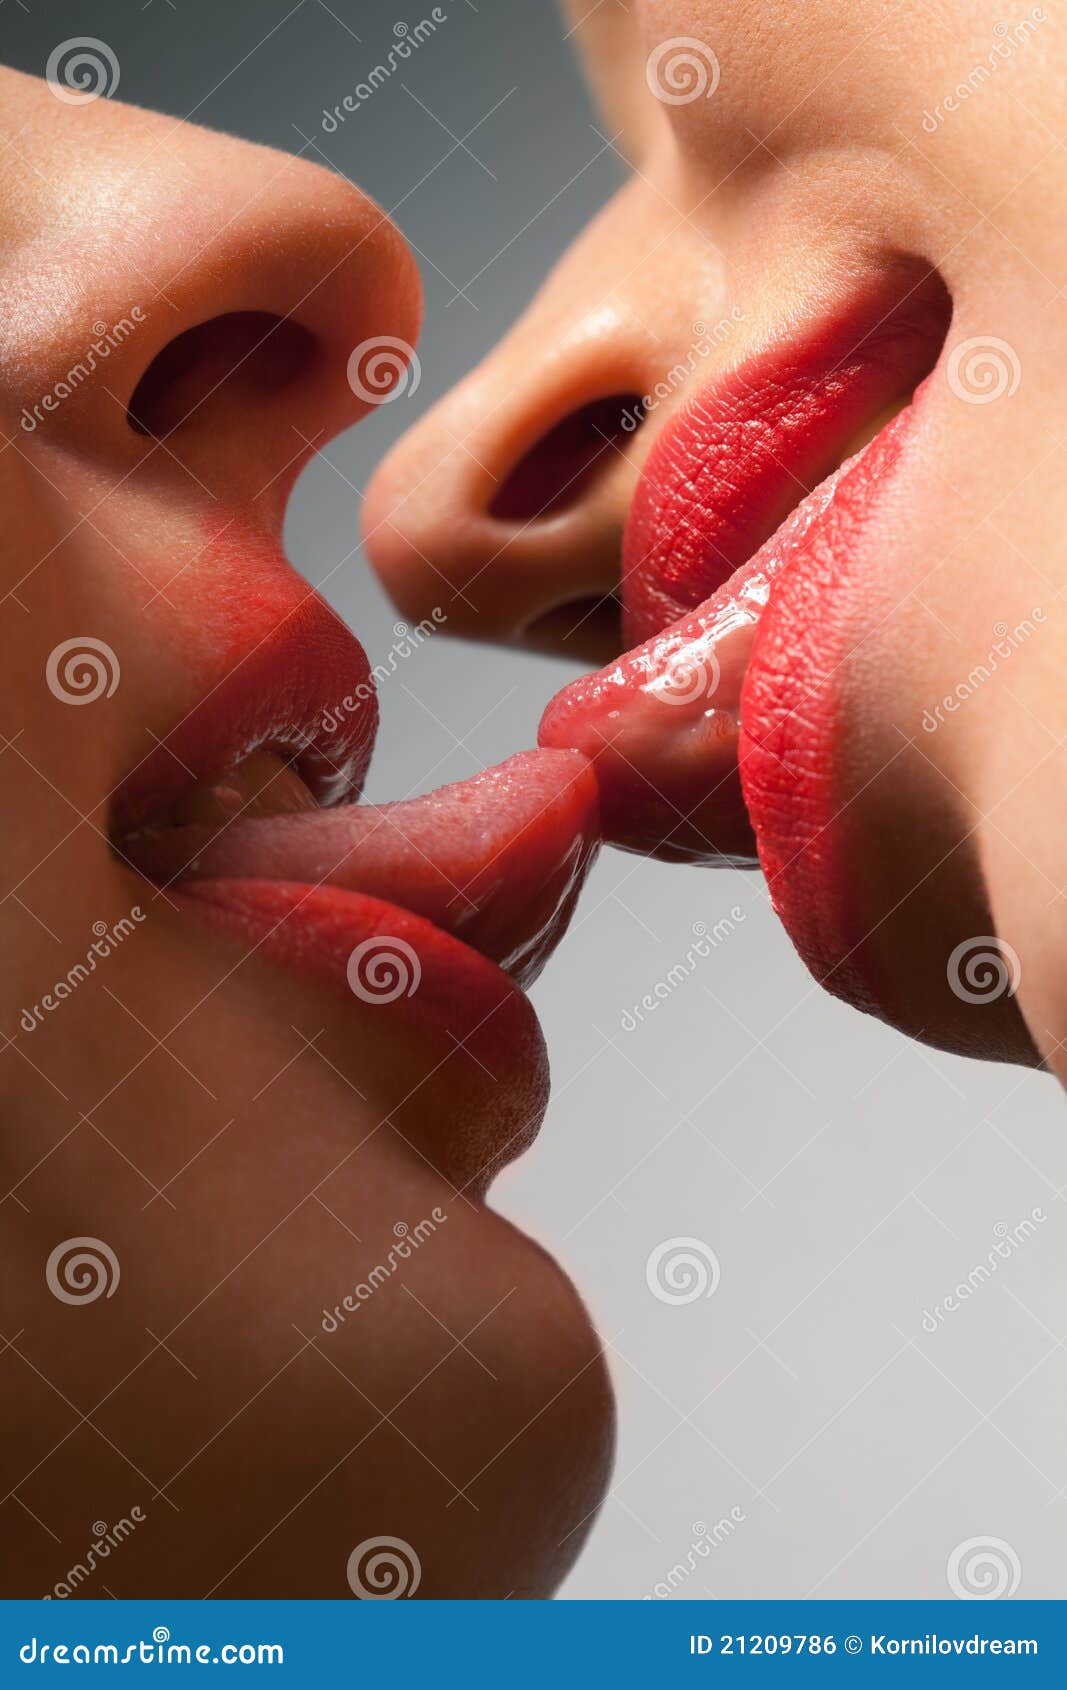 лесби целуются в губы фото 97